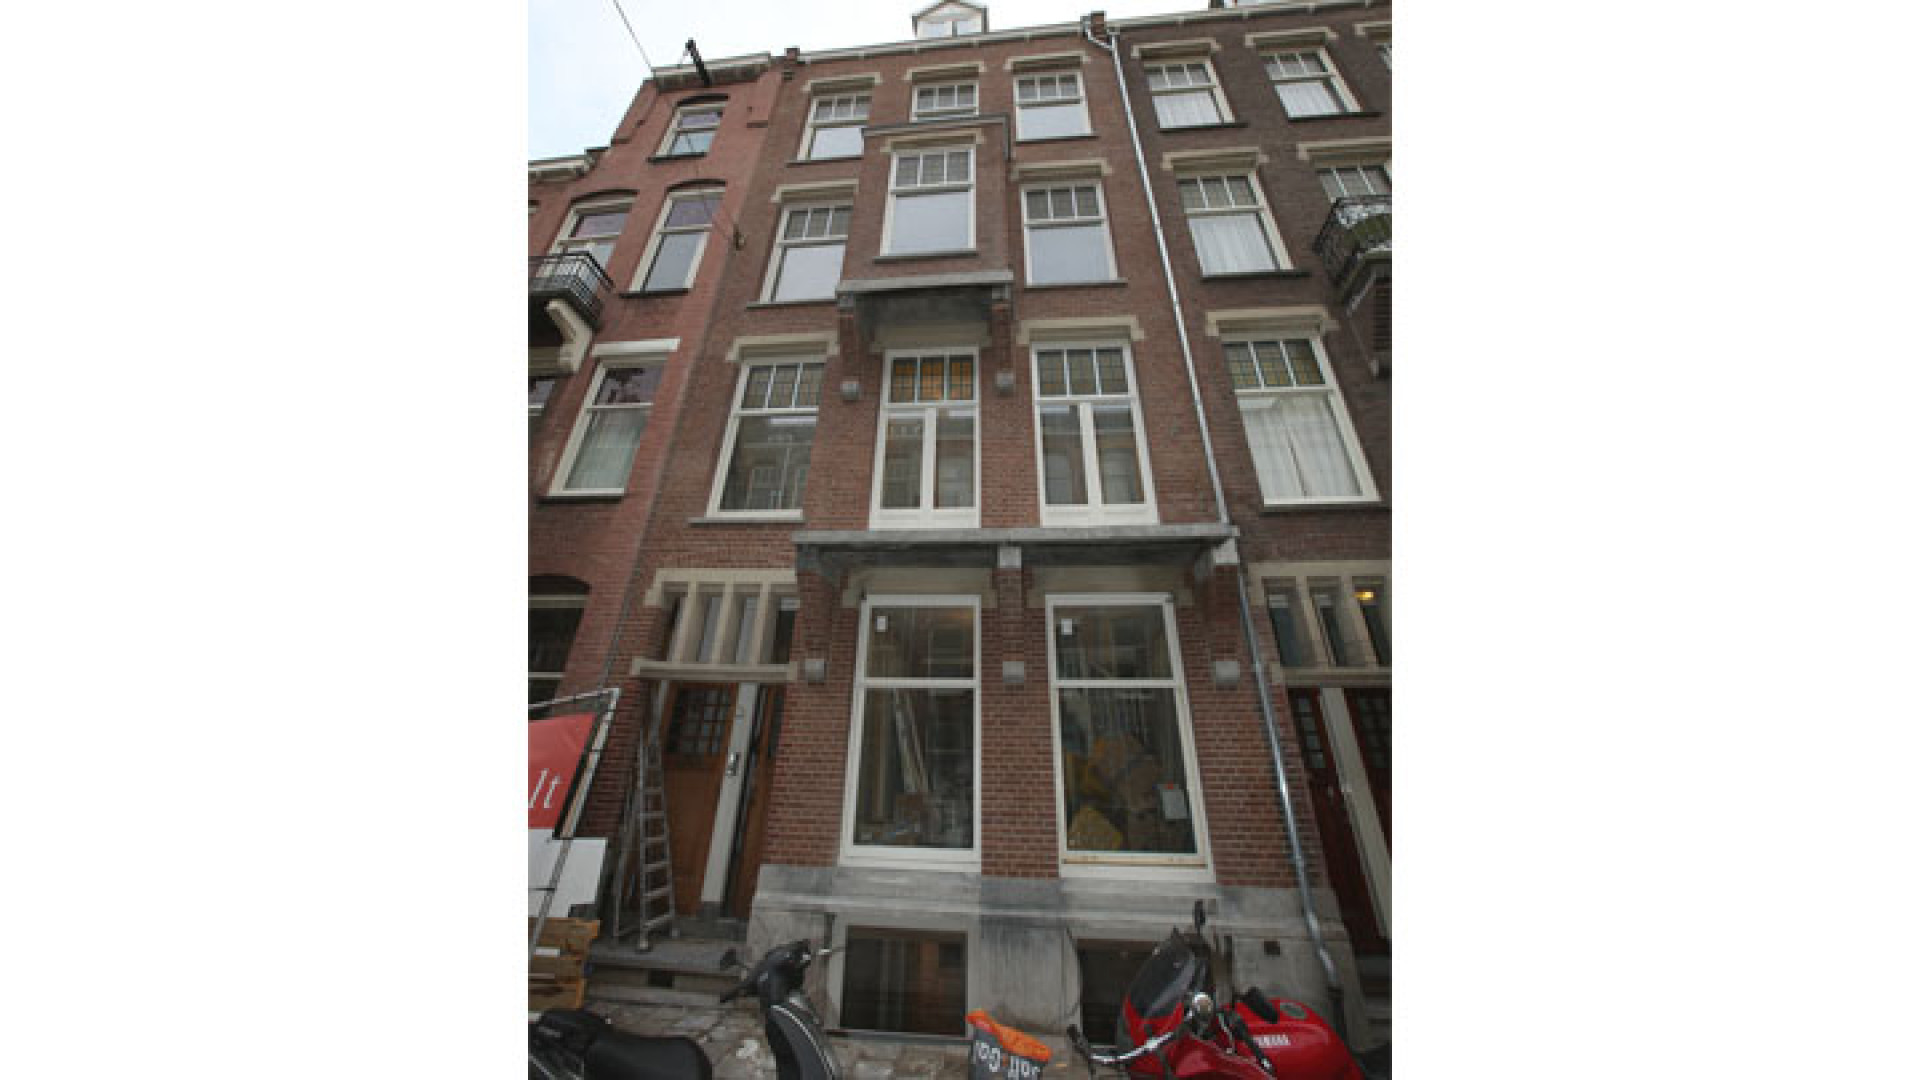 Doutzen Kroes koopt schitterend pand in Amsterdam Oud Zuid. Zie exclusieve foto's